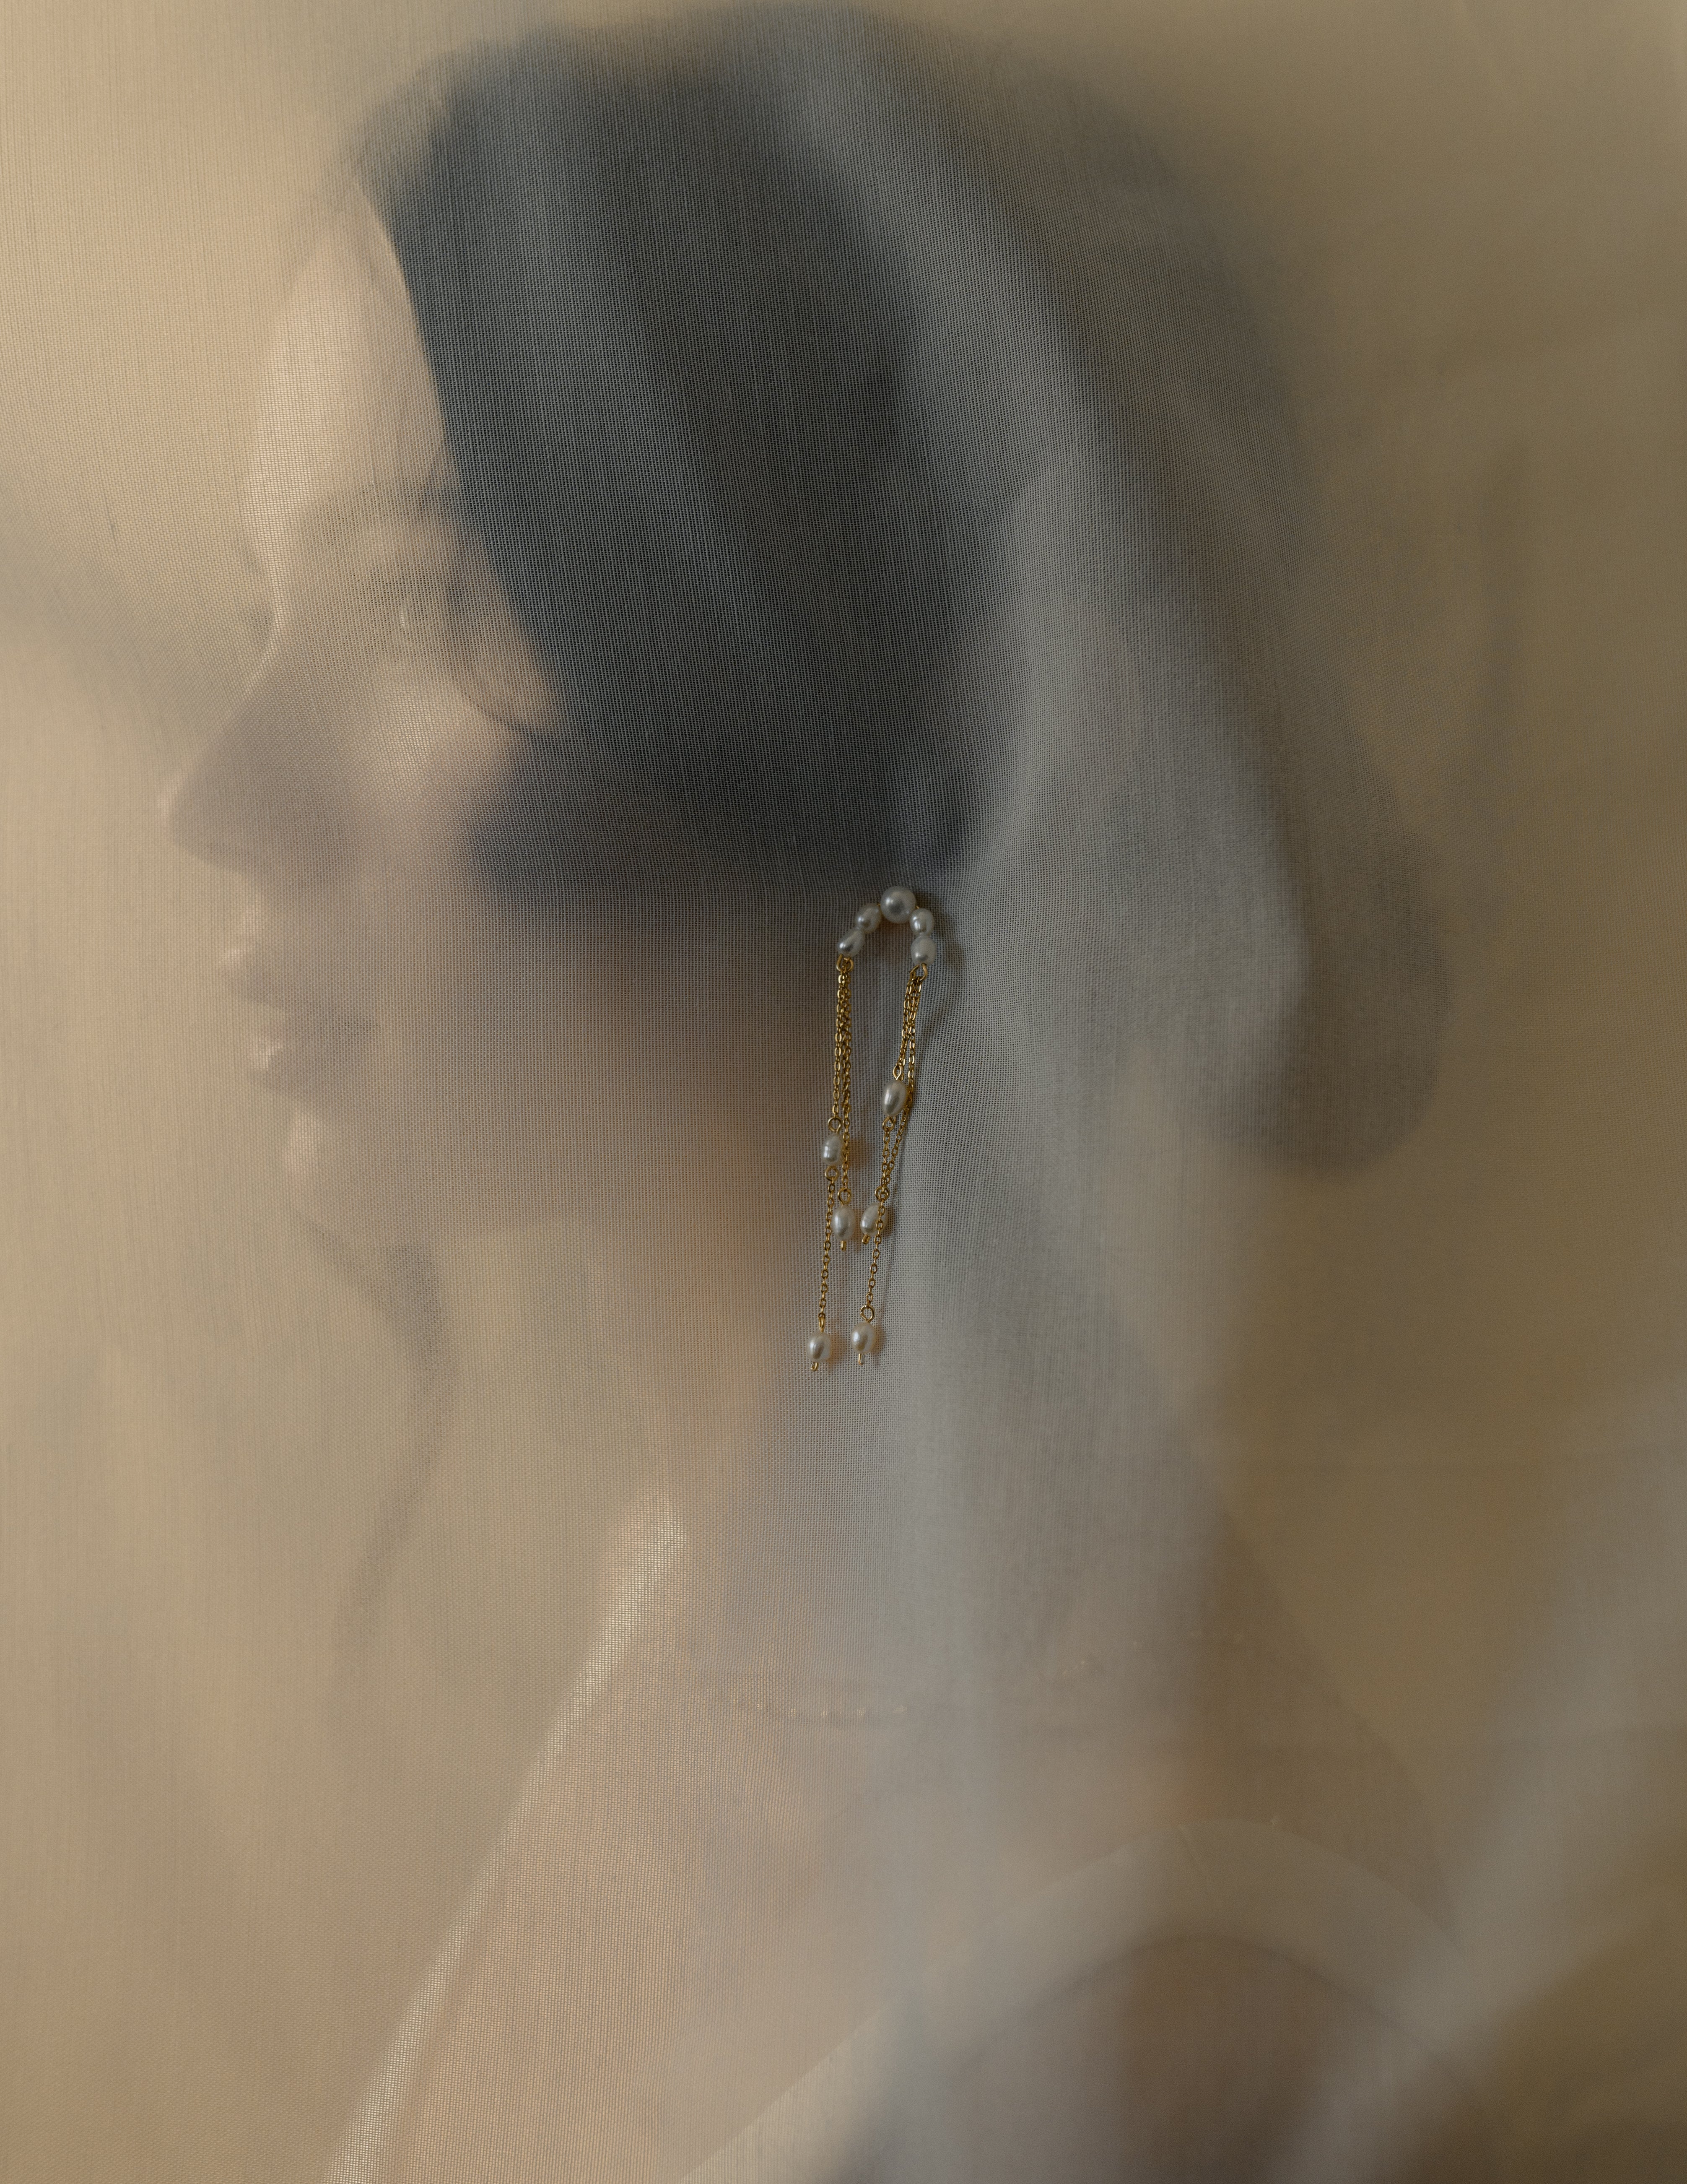 photo artistique du portrait d'une femme cachée par un voile de mariage et une boucle d'oreille posée sur le voile 